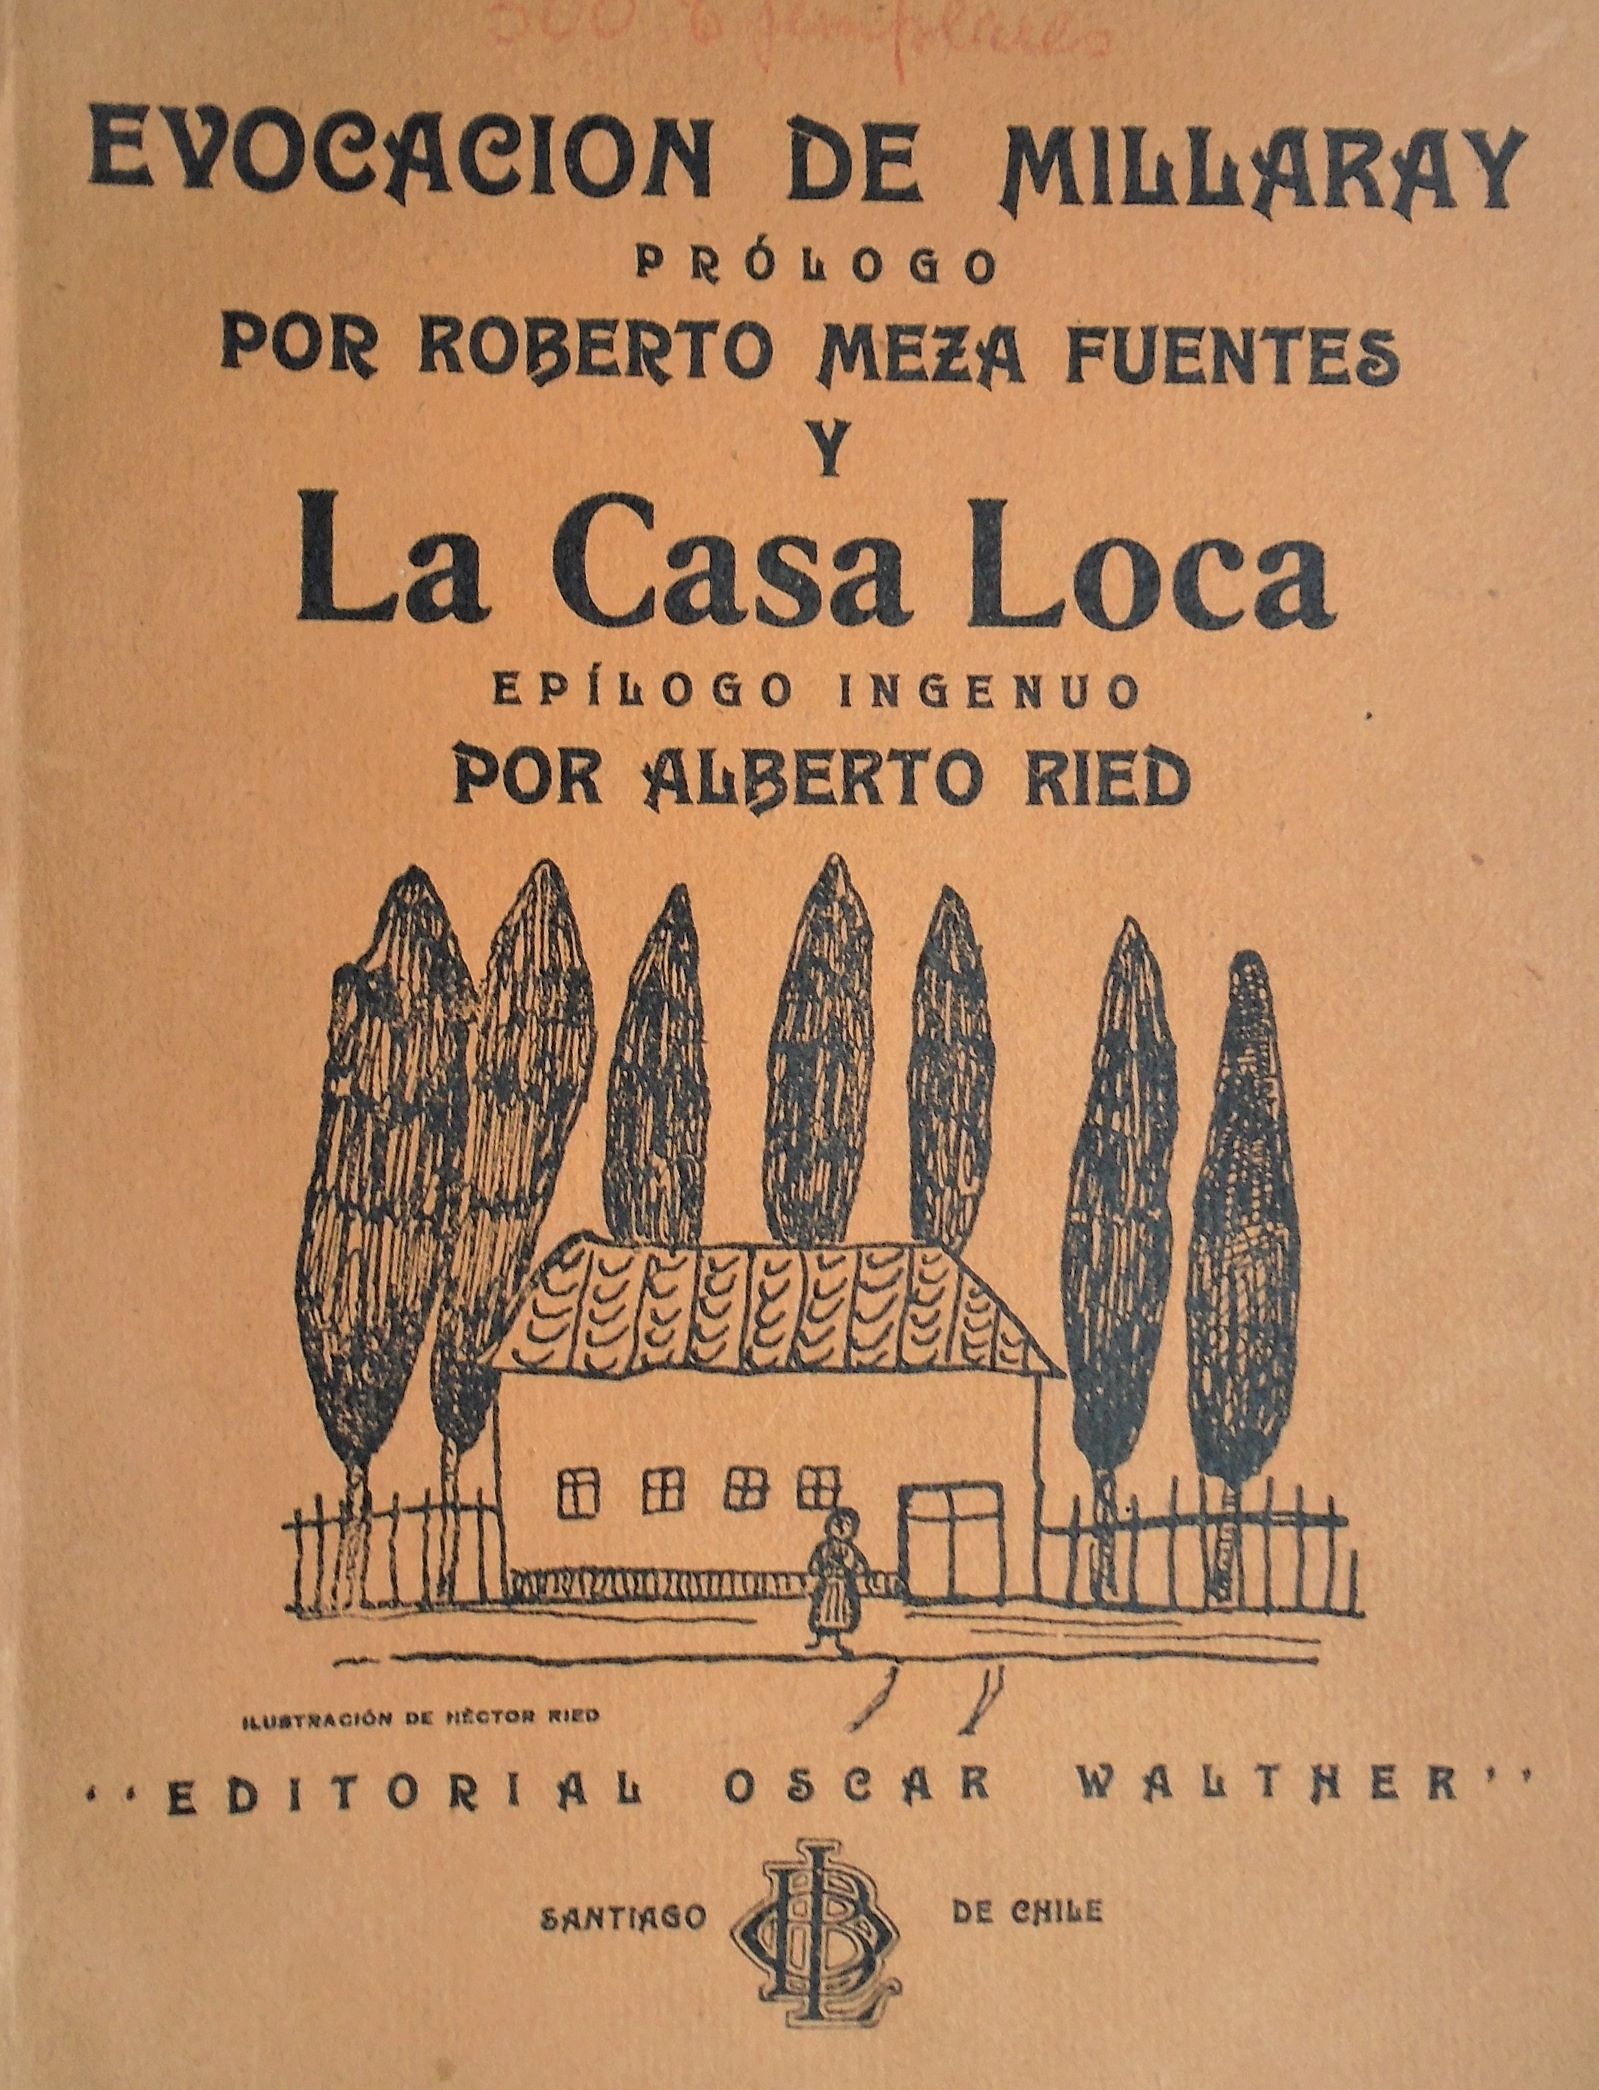 Roberto Meza Fuentes & Alberto Reid - Evocación de Millaray / La Casa Loca